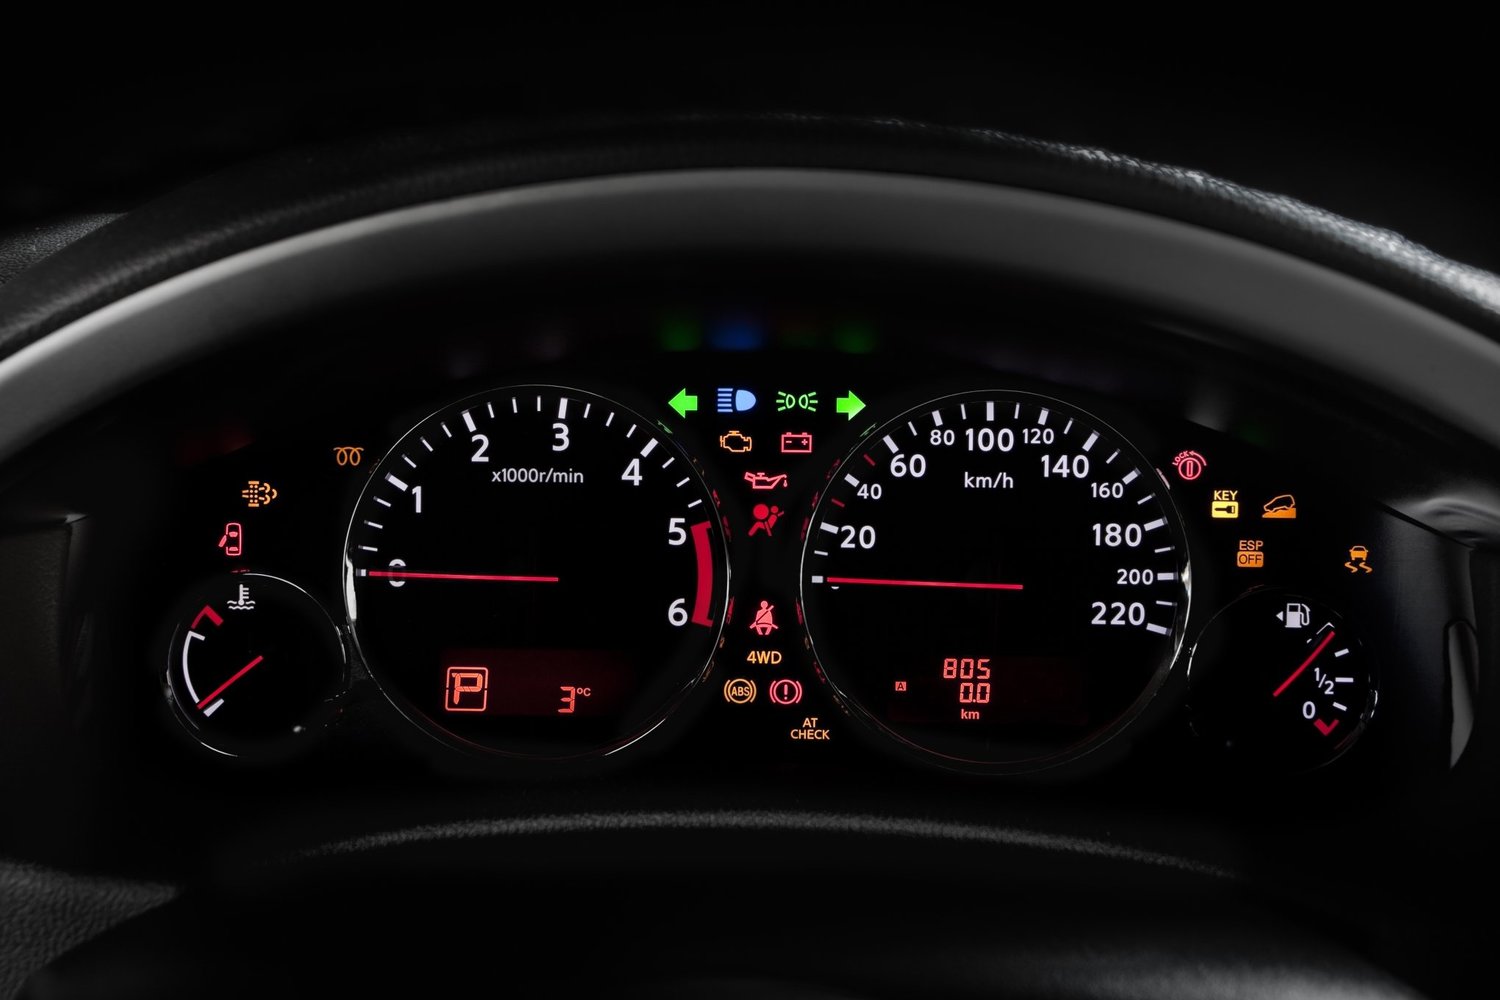 внедорожник Nissan Pathfinder 2010 - 2014г выпуска модификация 2.5 AT (190 л.с.)